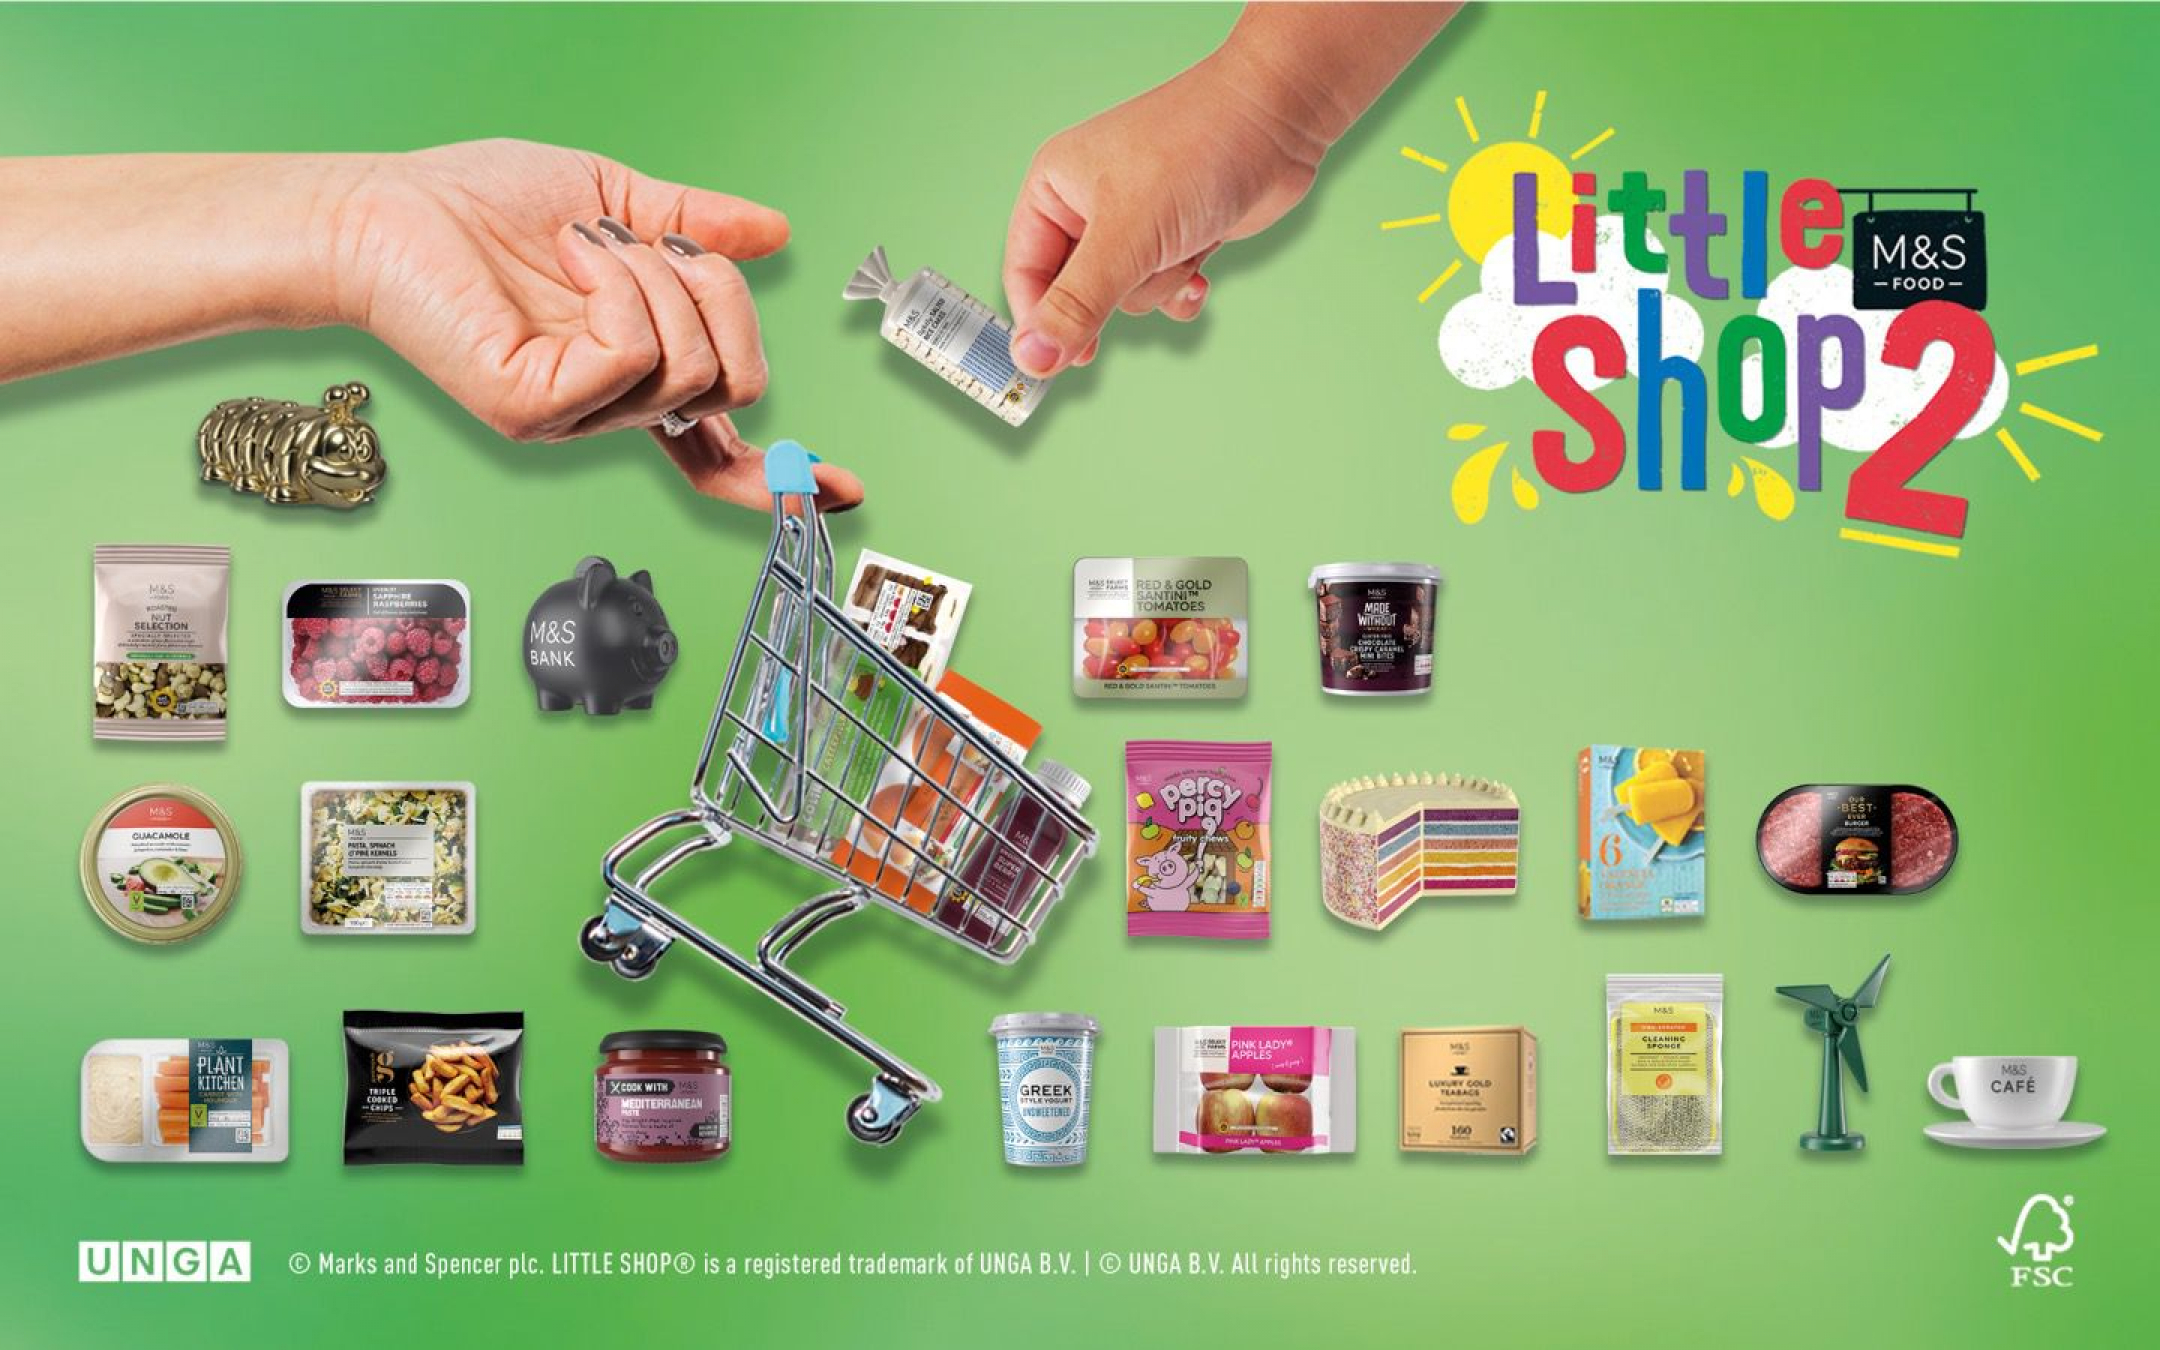 M&S Little Shop 2 Collectibles